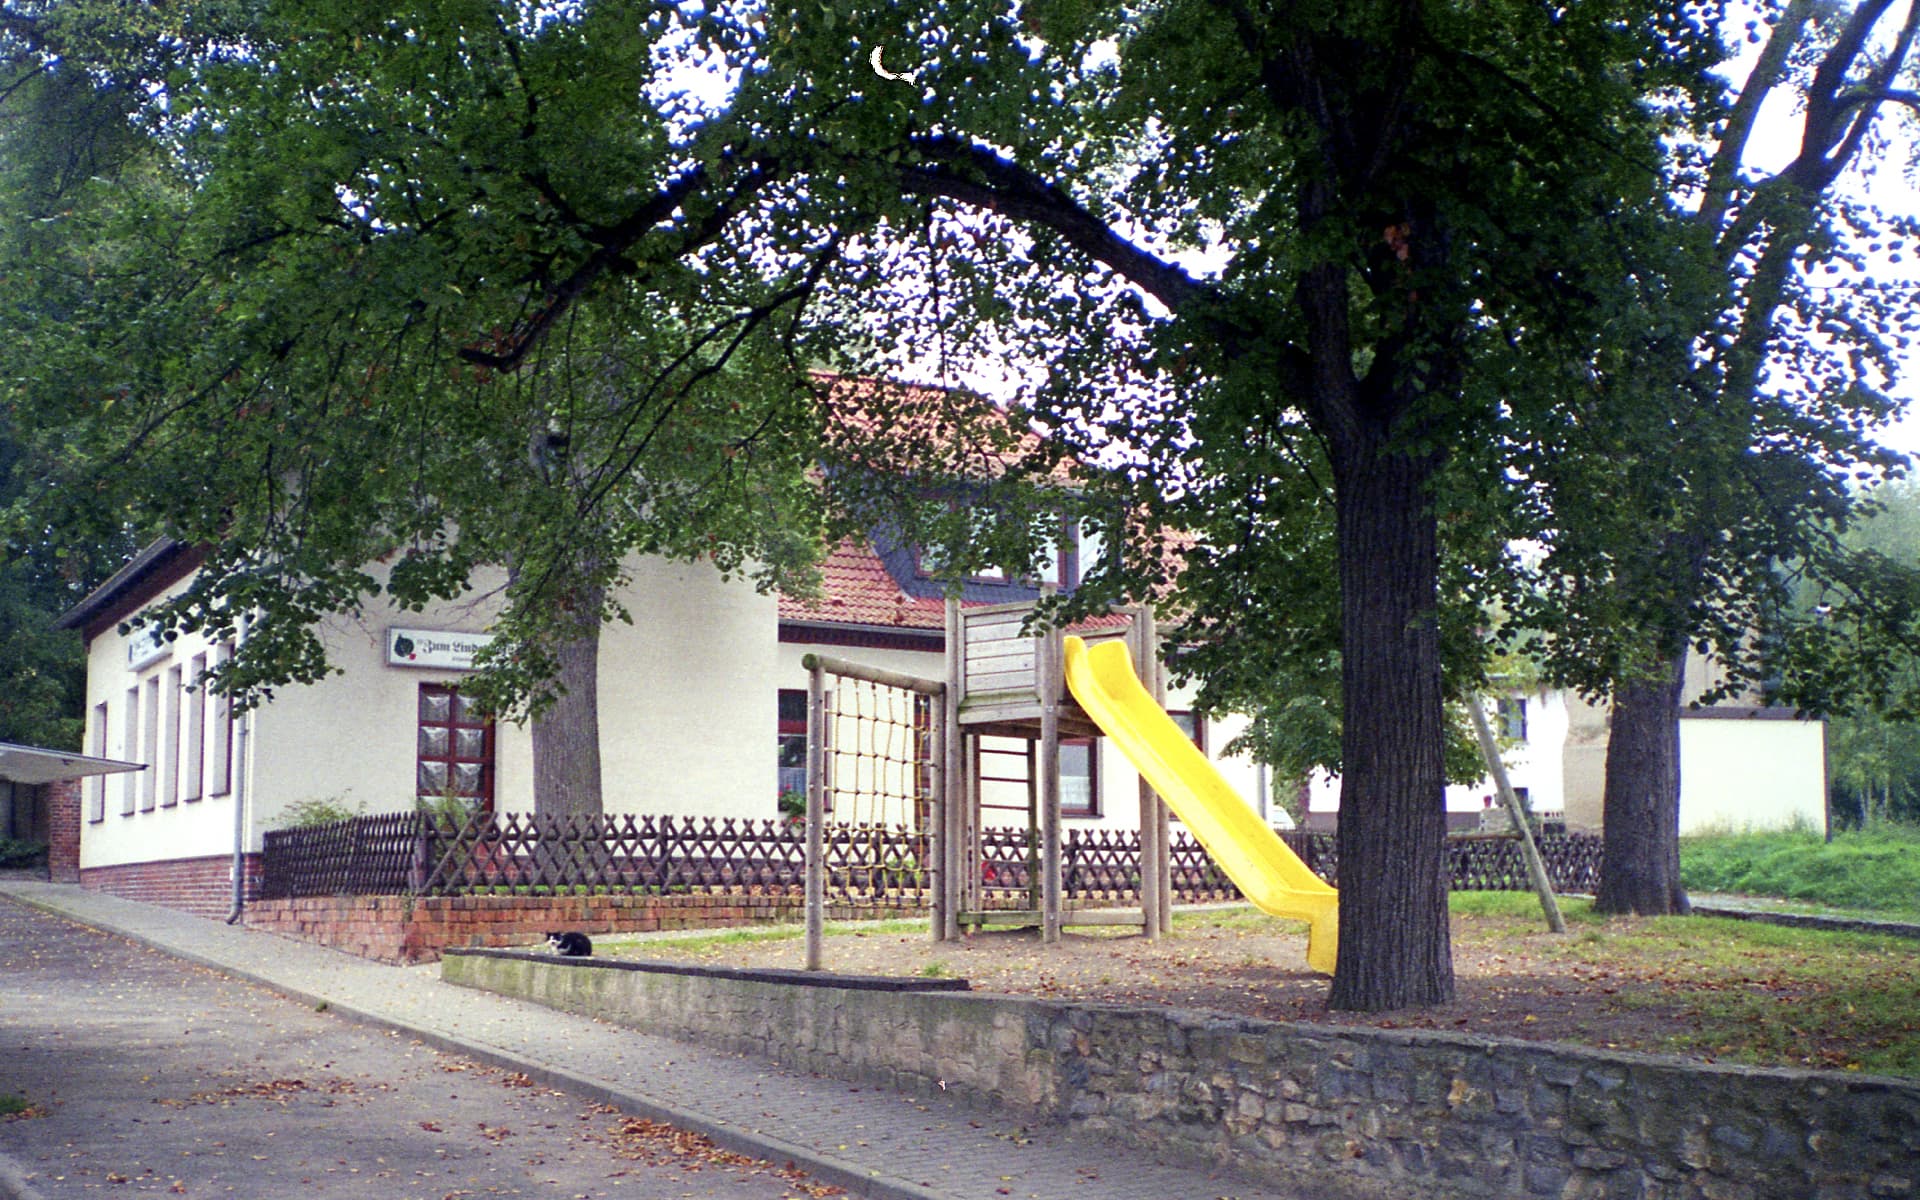 1997 - Altenpflegeheim "Zum Lindenhof"